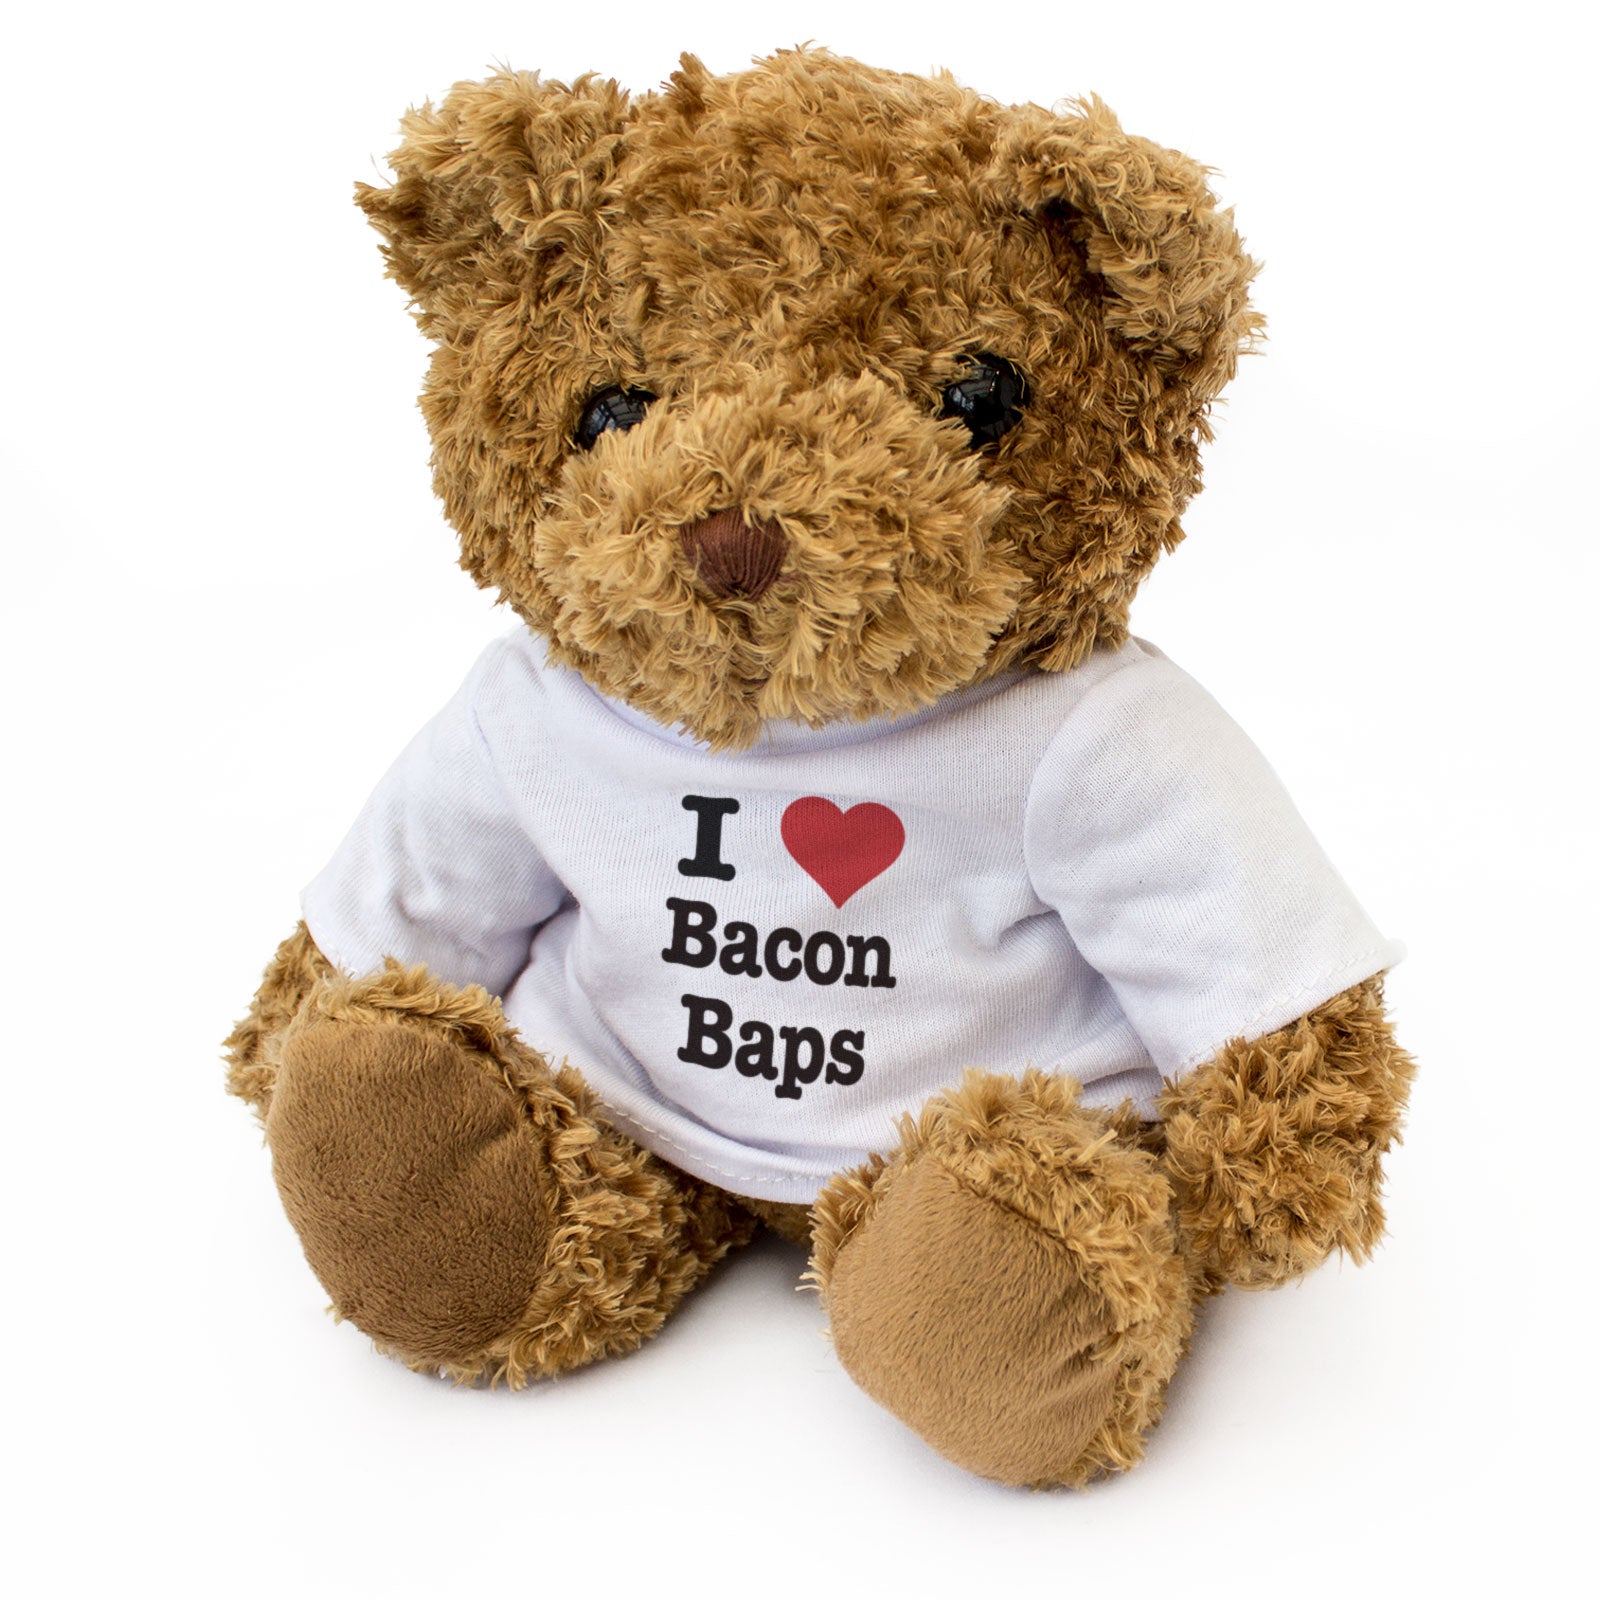 I Love Bacon Baps - Teddy Bear